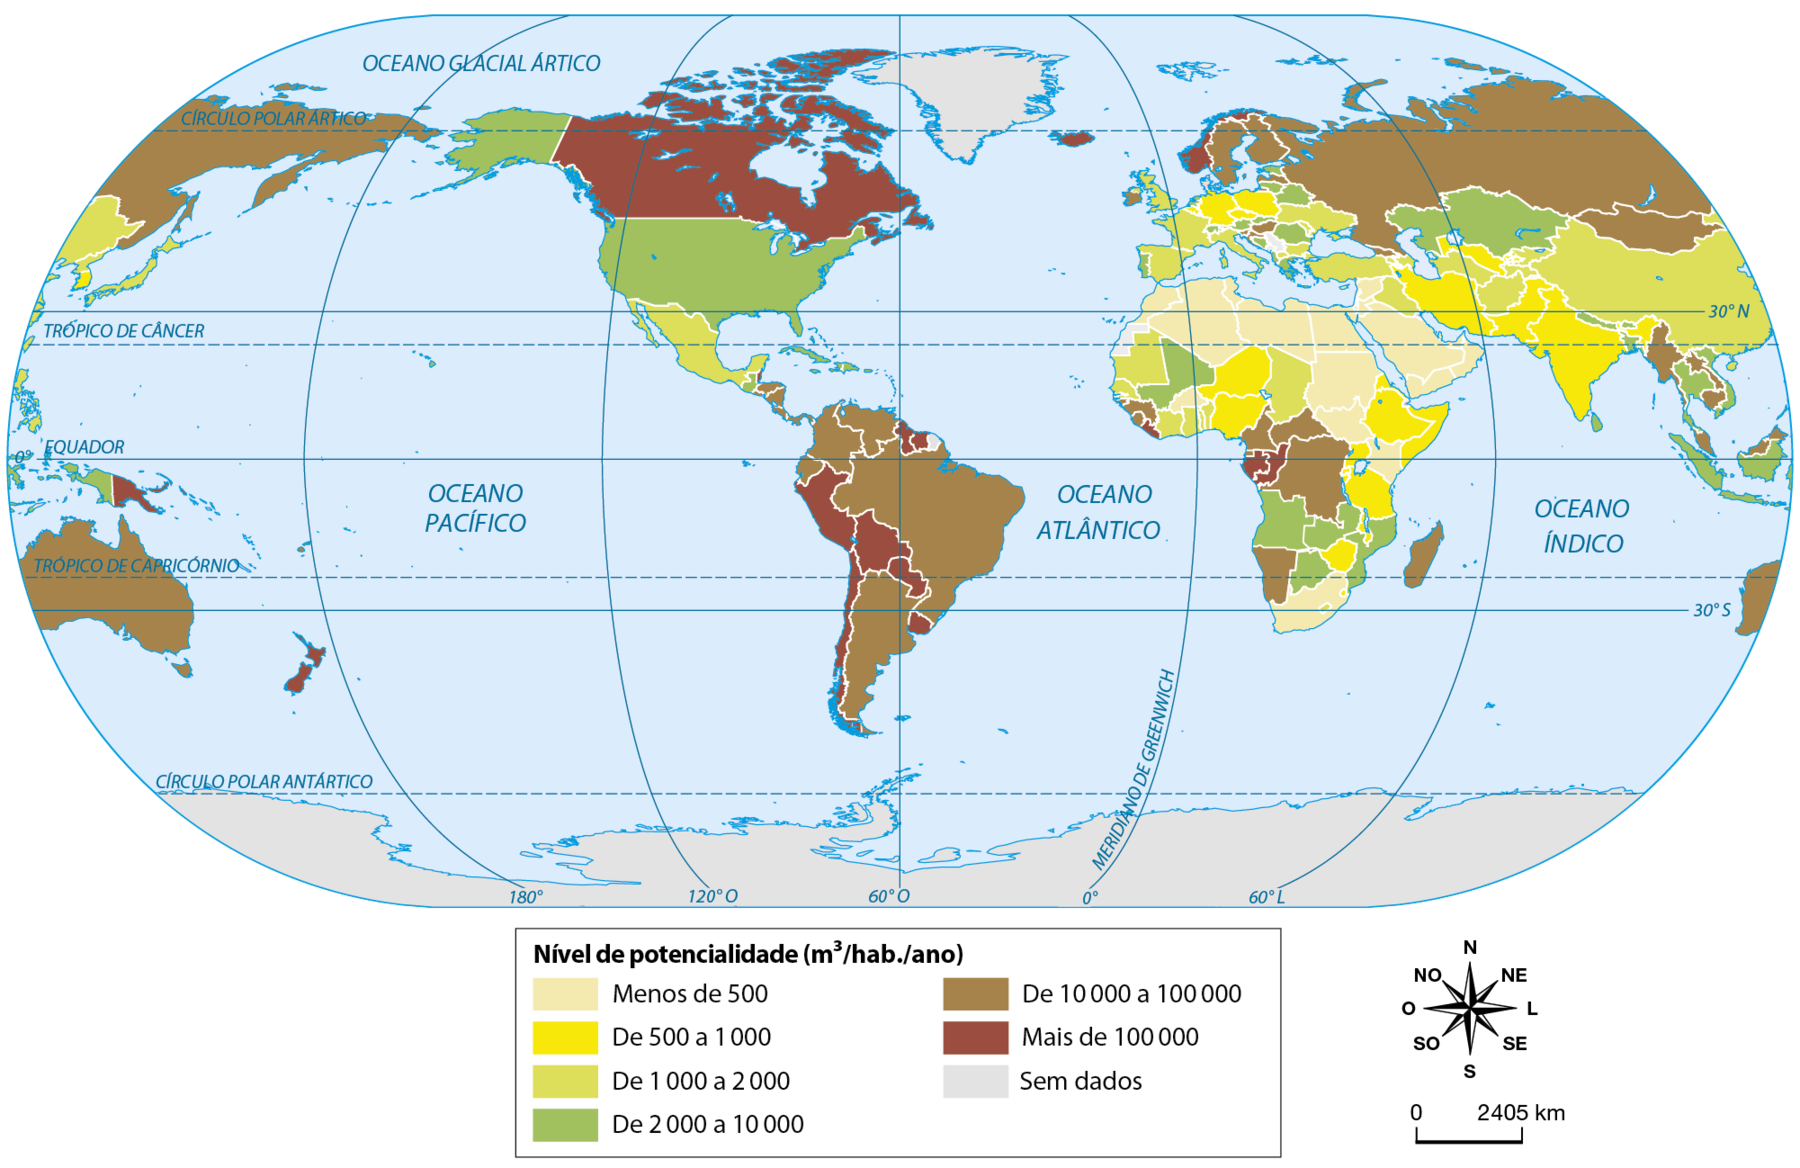 Mapa. Planisfério: distribuição de água doce. Por meio de cores, são representados os níveis de potencialidade por metro cúbico por habitante ao ano. Bege: menos de 500. Norte da África e parte do Oriente Médio. Amarelo: De 500 a 1.000. Oeste da África, além de países como Índia, Irã, Paquistão, Etiópia, Somália, Nigéria, Alemanha e Polônia. Verde claro: De 1.000 a 2.000. Países como México, Japão, Coreia do Norte, Mauritânia, Senegal, Costa do Marfim, Gana, Espanha, França, Itália, Turquia, Iraque, Ucrânia, Afeganistão e China. Verde escuro: De 2.000 a 10.000. Países como Estados Unidos, Mali, Angola, Zâmbia, Botsuana, Moçambique, Portugal, Grécia, Romênia, Cazaquistão, Indonésia, Vietnã e Tailândia. Marrom: De 10.000 a 100.000. Países como Brasil, Argentina, Venezuela, Colômbia, Equador, Austrália, Rússia, Finlândia, Suécia, Namíbia, República Democrática do Congo, República Centro-Africana, Camarões, Madagascar, Mianmar, Camboja e Malásia. Marro escuro: Mais de 100.000. Países como Canadá, Noruega, Suriname, Peru, Bolívia, Chile, Paraguai, Uruguai, Nova Zelândia, Libéria, Gabão e Congo. Sem dados: Groenlândia e Antártida. À direita, a rosa dos ventos. Abaixo, a escala de 0 a 2405 quilômetros.